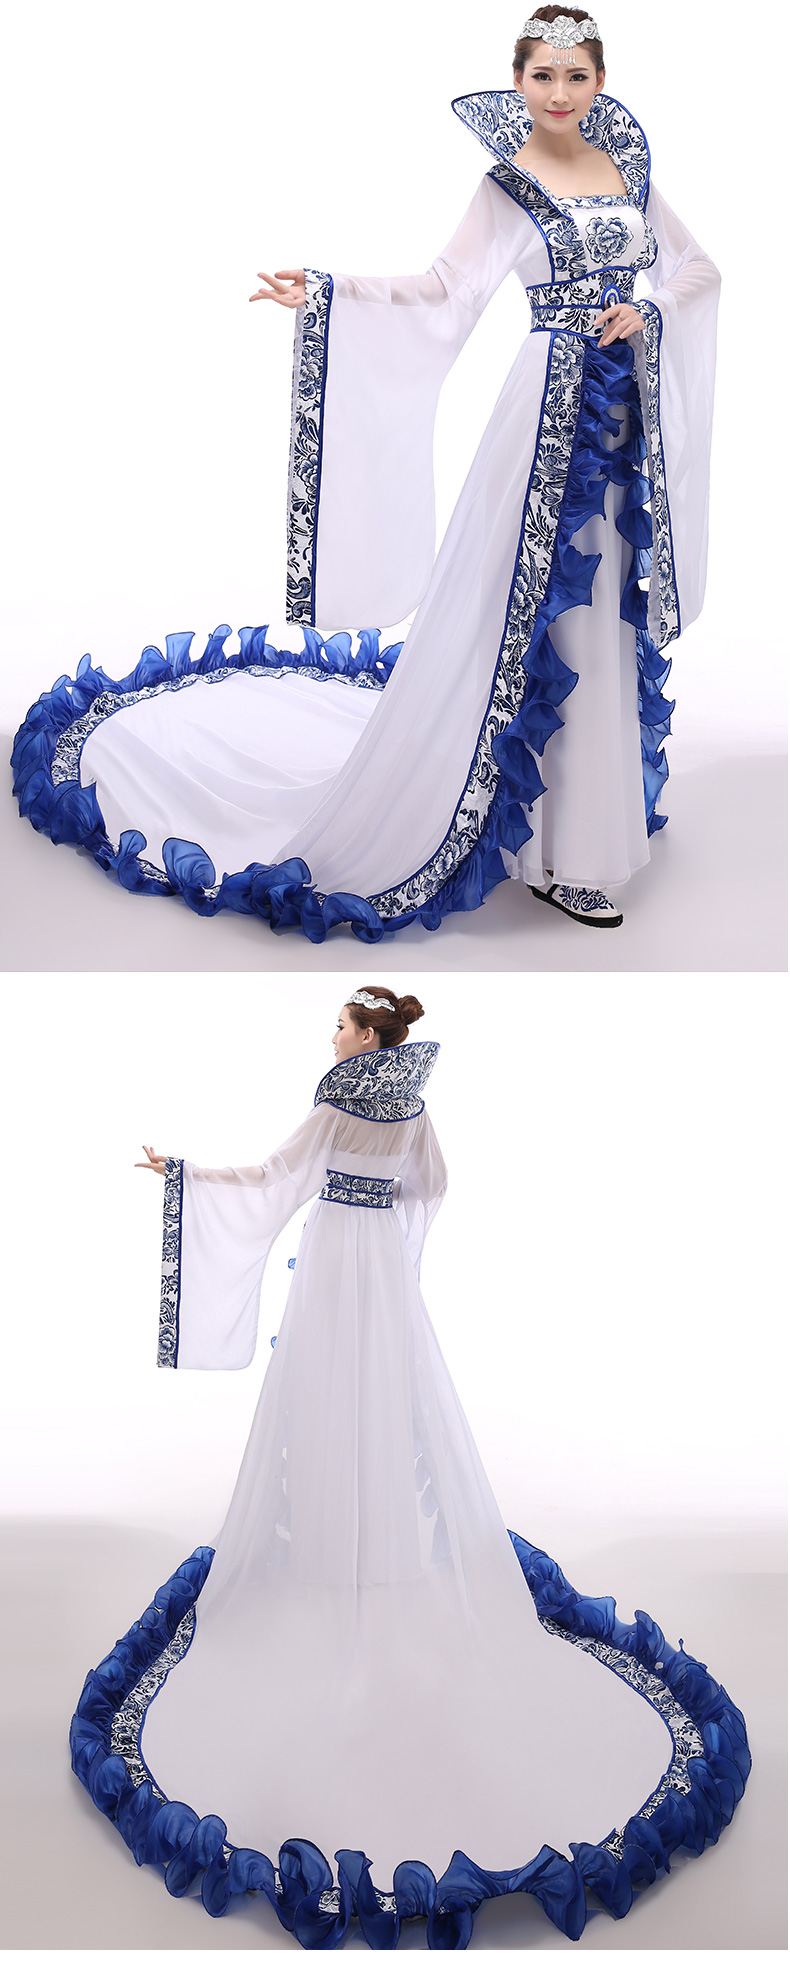 复古青花瓷汉服牡丹印花中式礼服古装美人图片